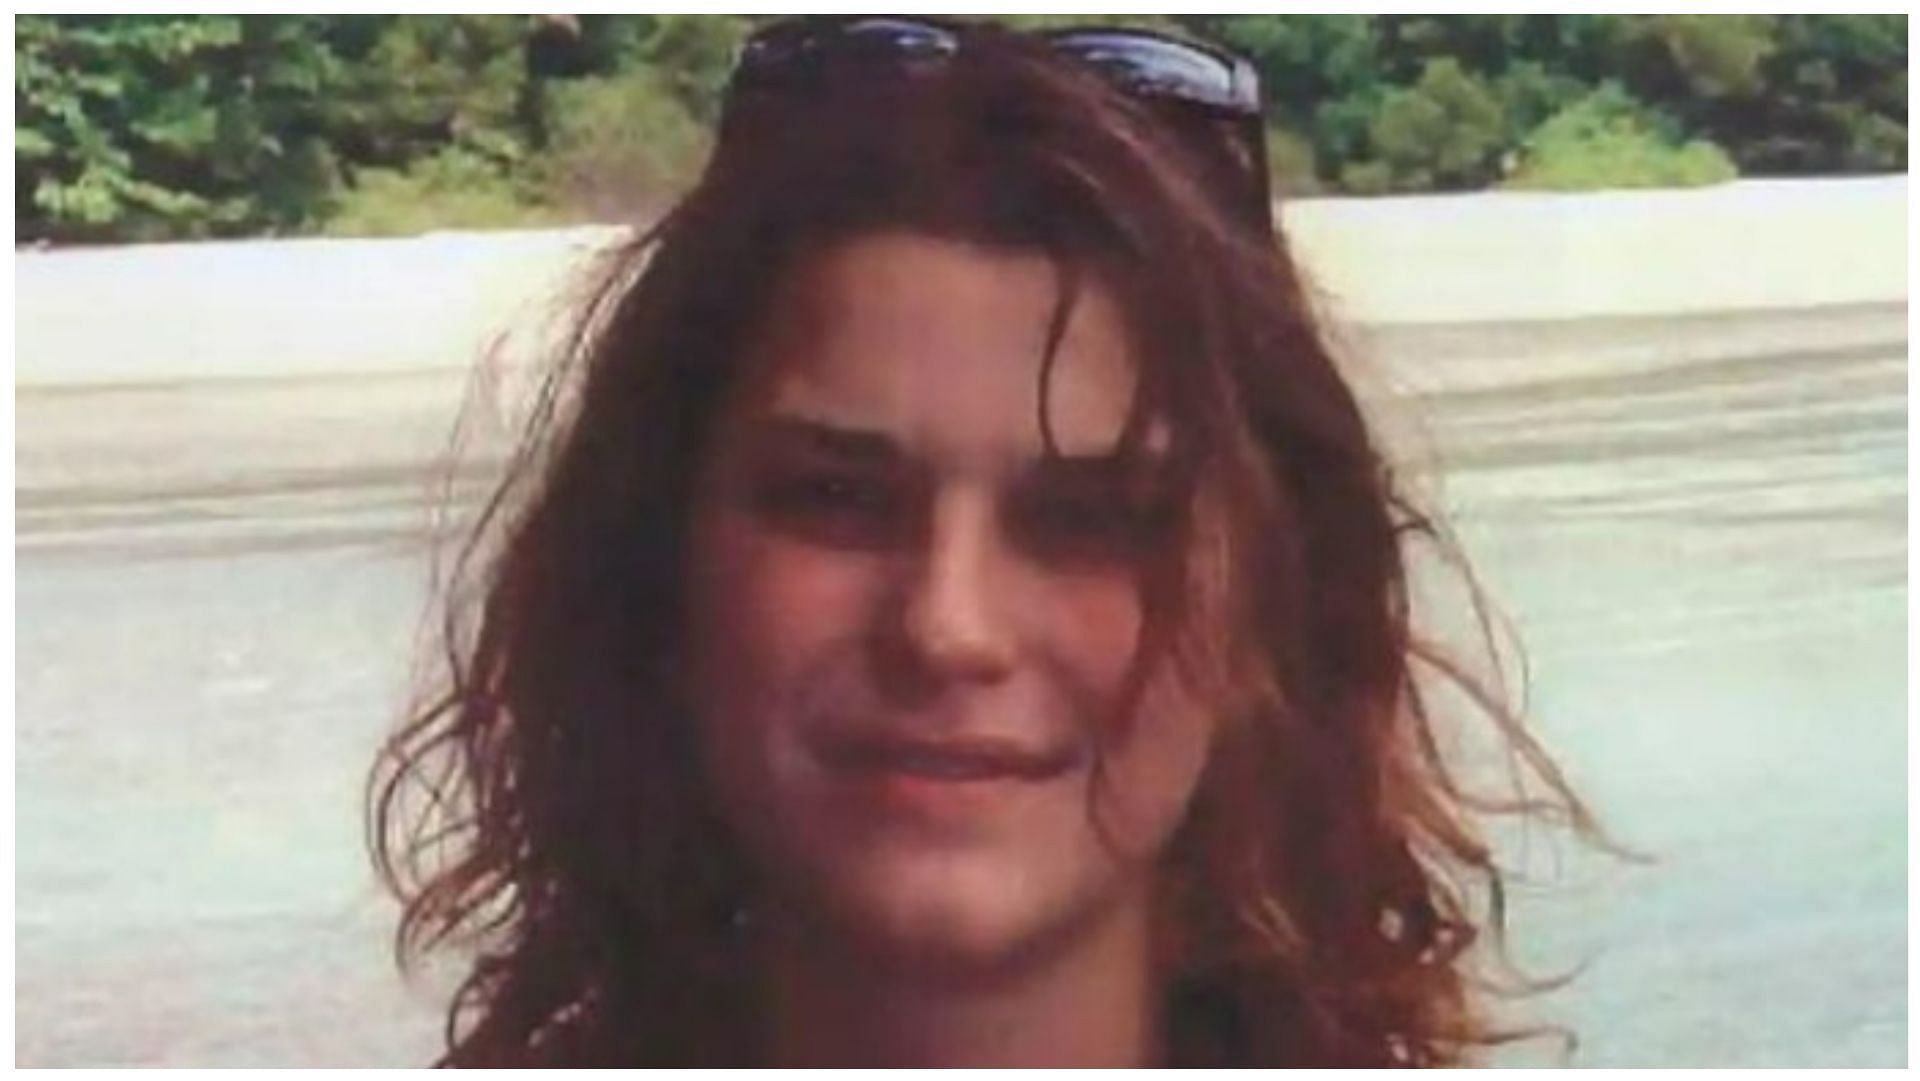 Strobel&#039;s former partner arrested in connection to her death (Image via NSW Police)